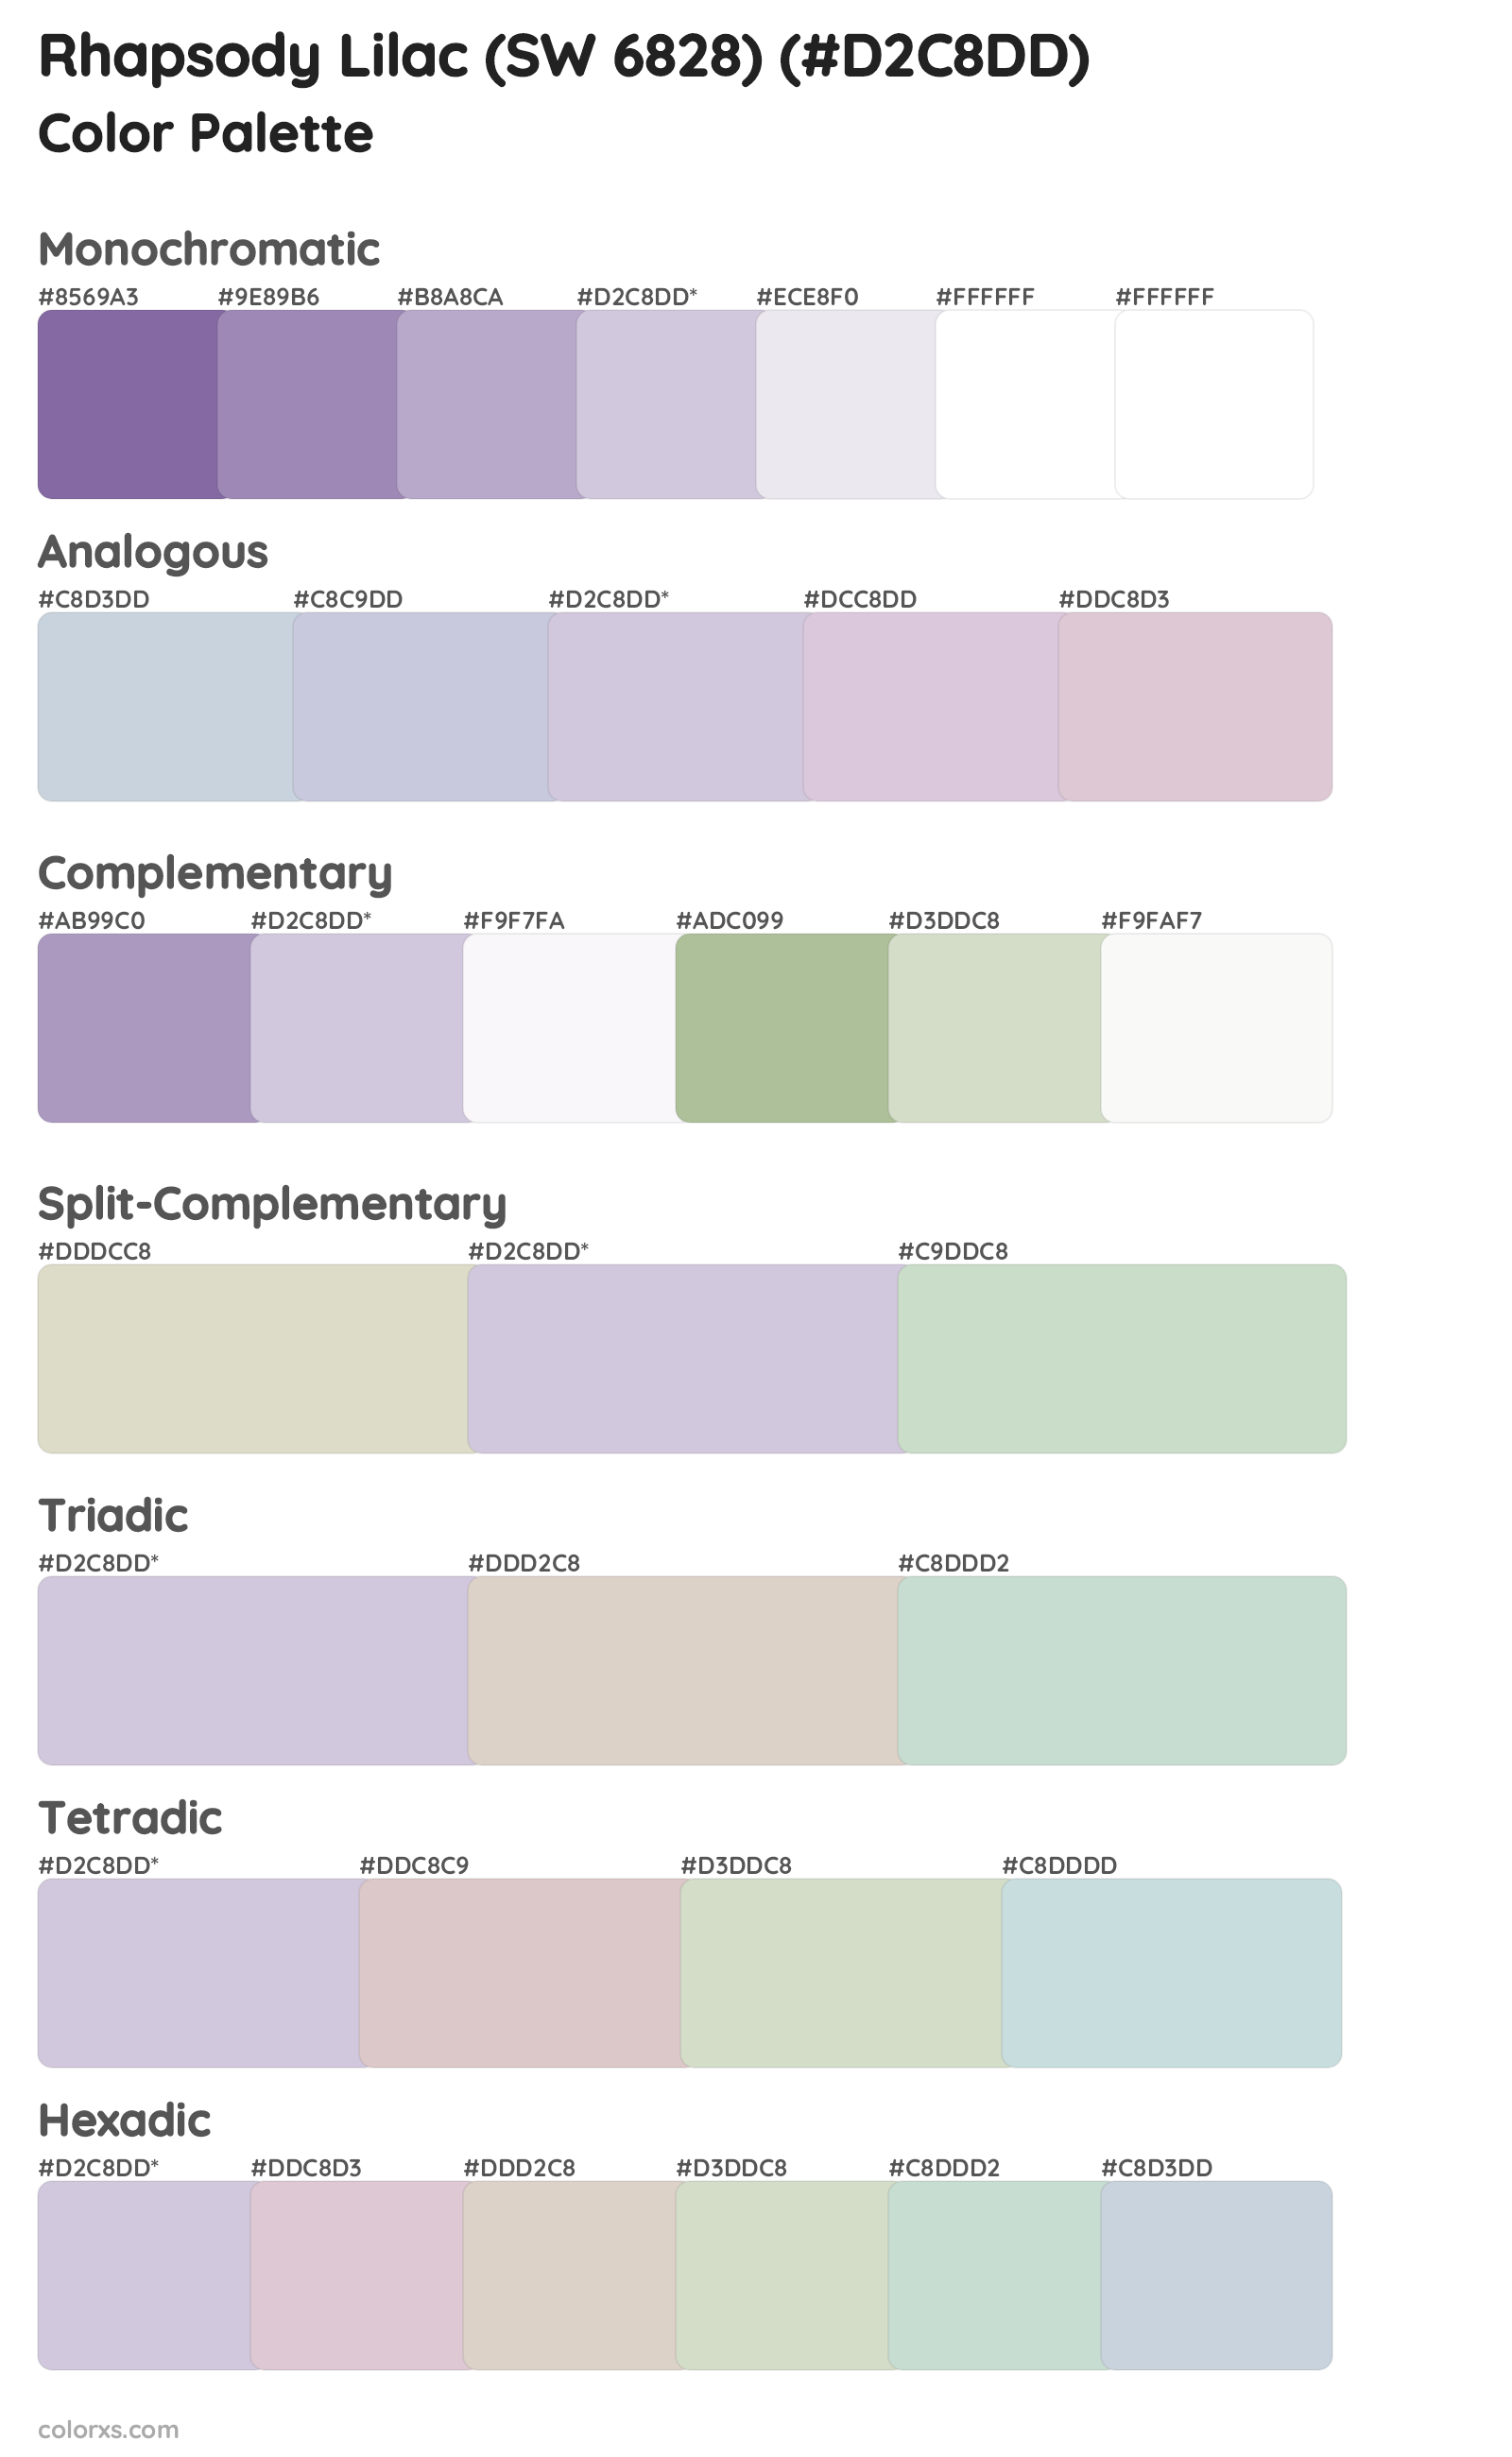 Rhapsody Lilac (SW 6828) Color Scheme Palettes